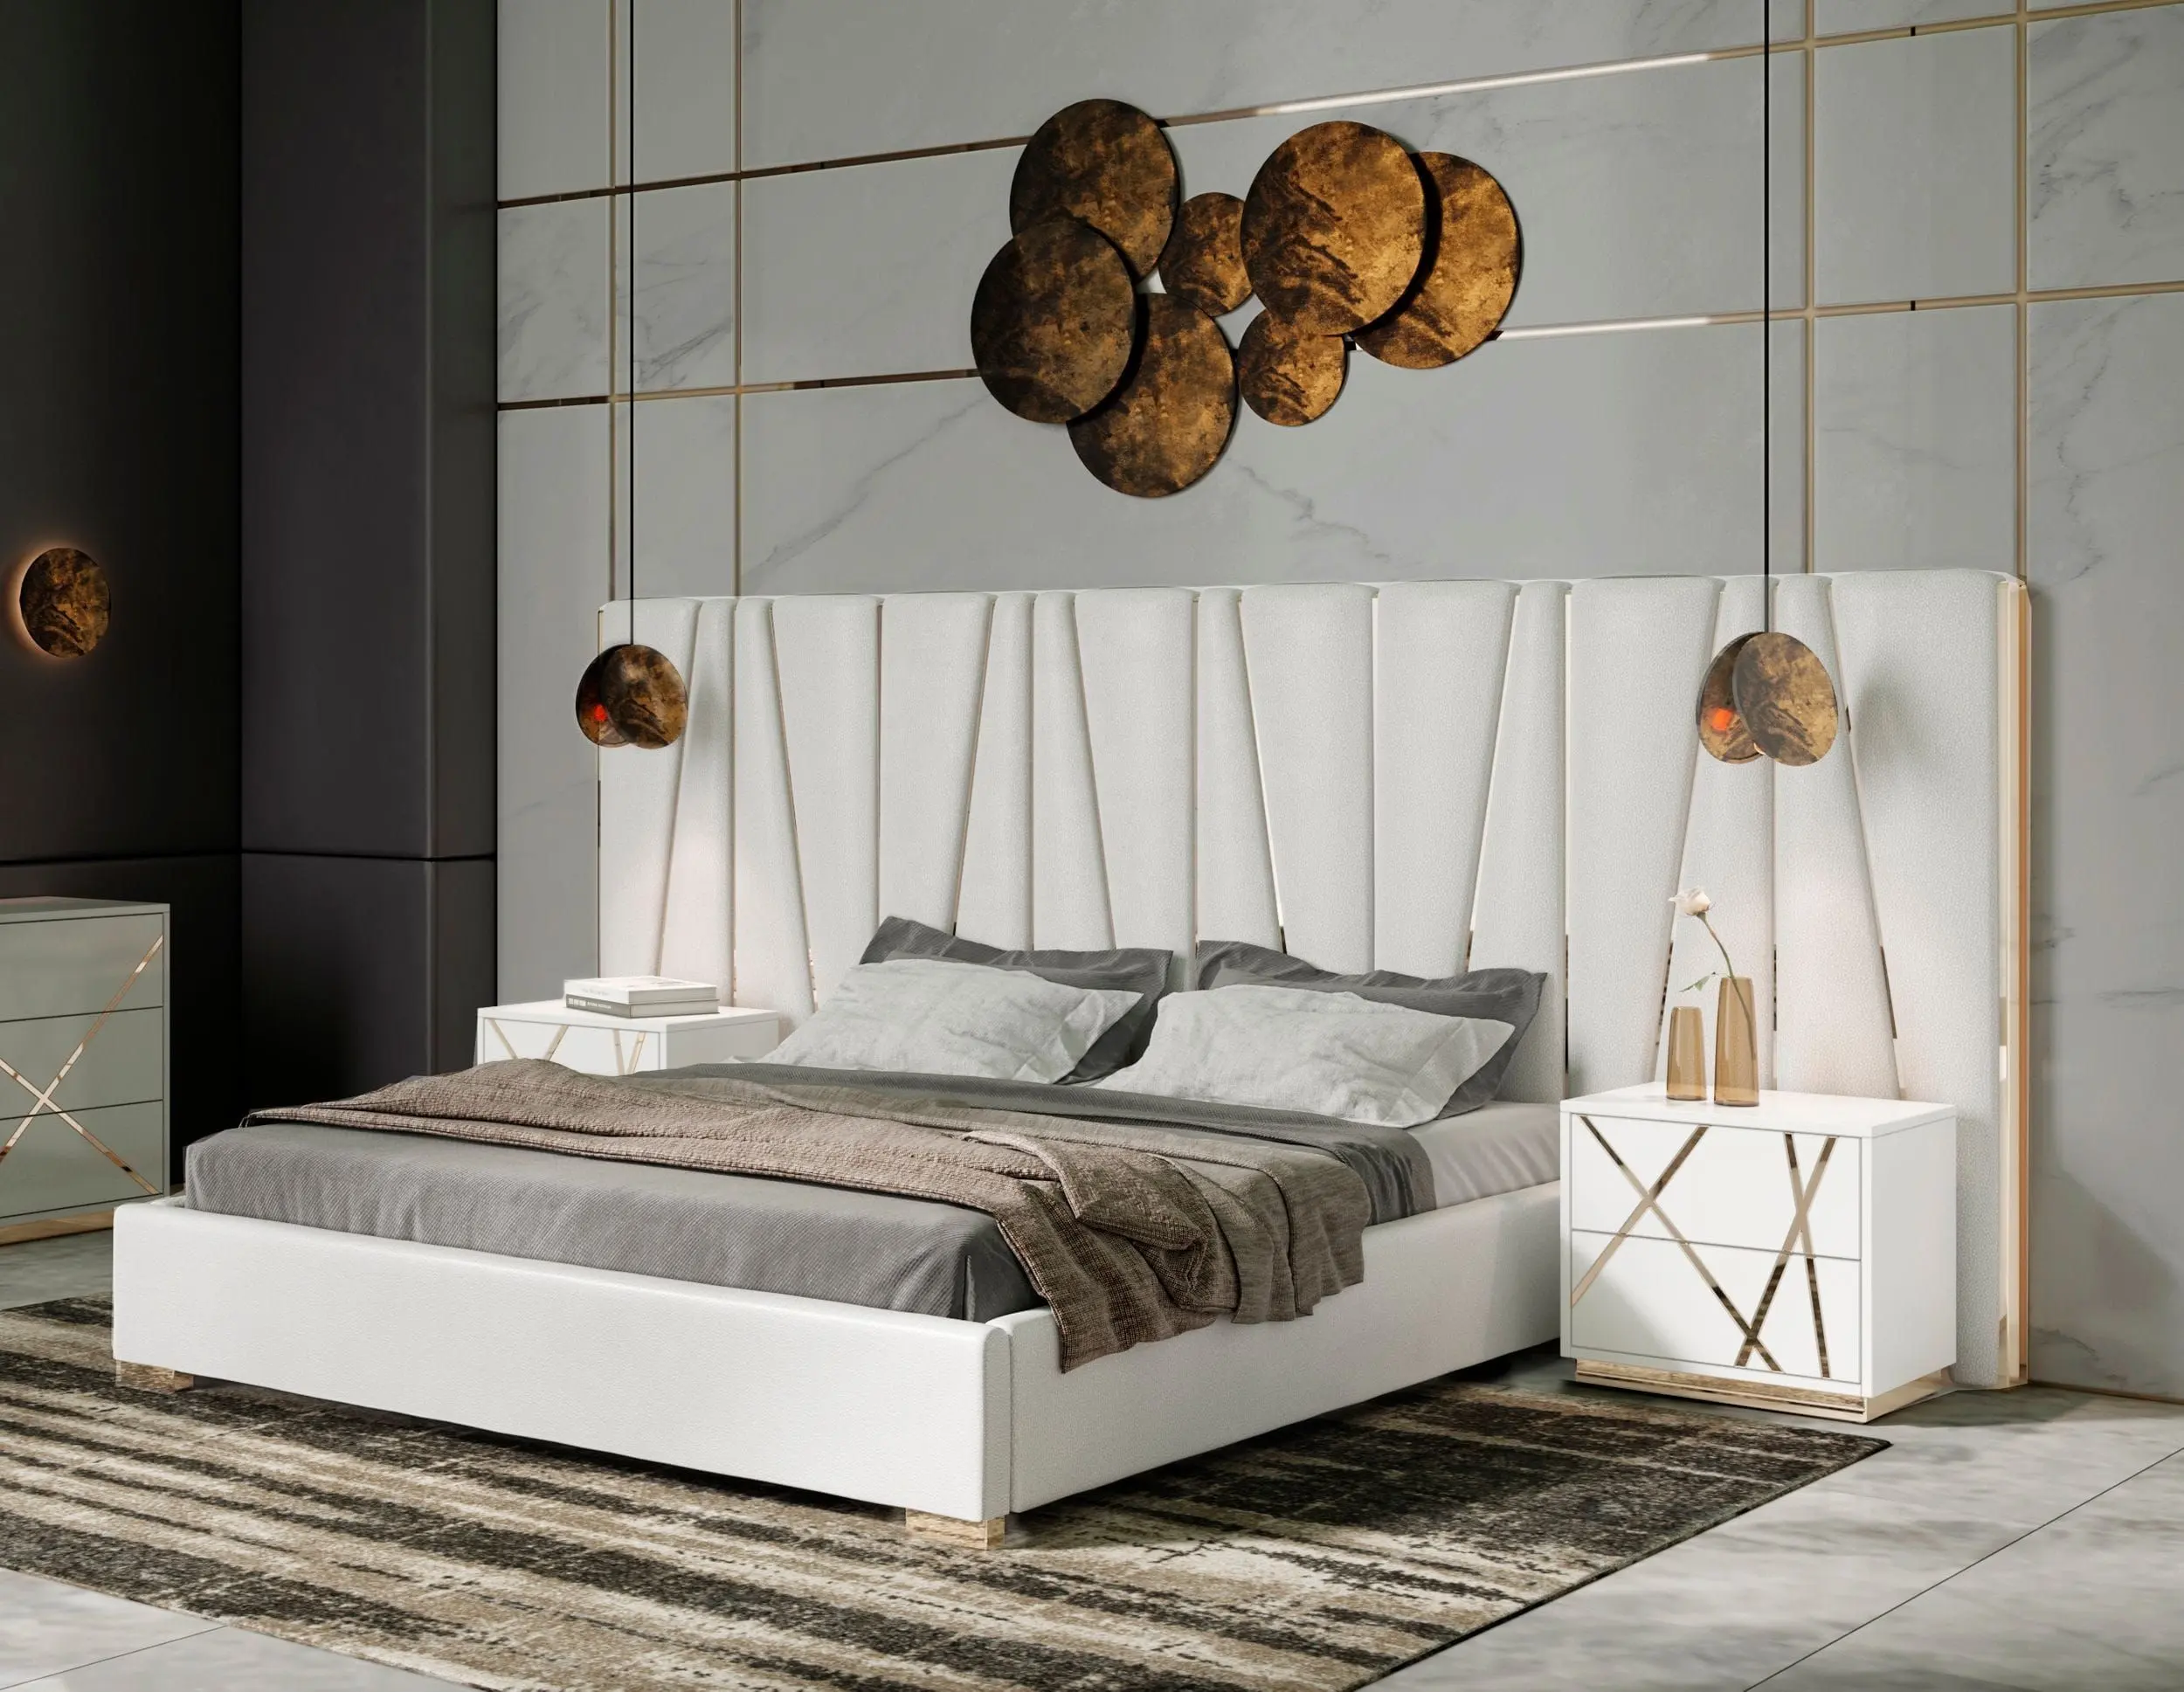 NOVA White High Gloss California King Dormitorio Gold Cabecero Juego de 3 piezas Muebles Modern Luxury Double Queen Bed